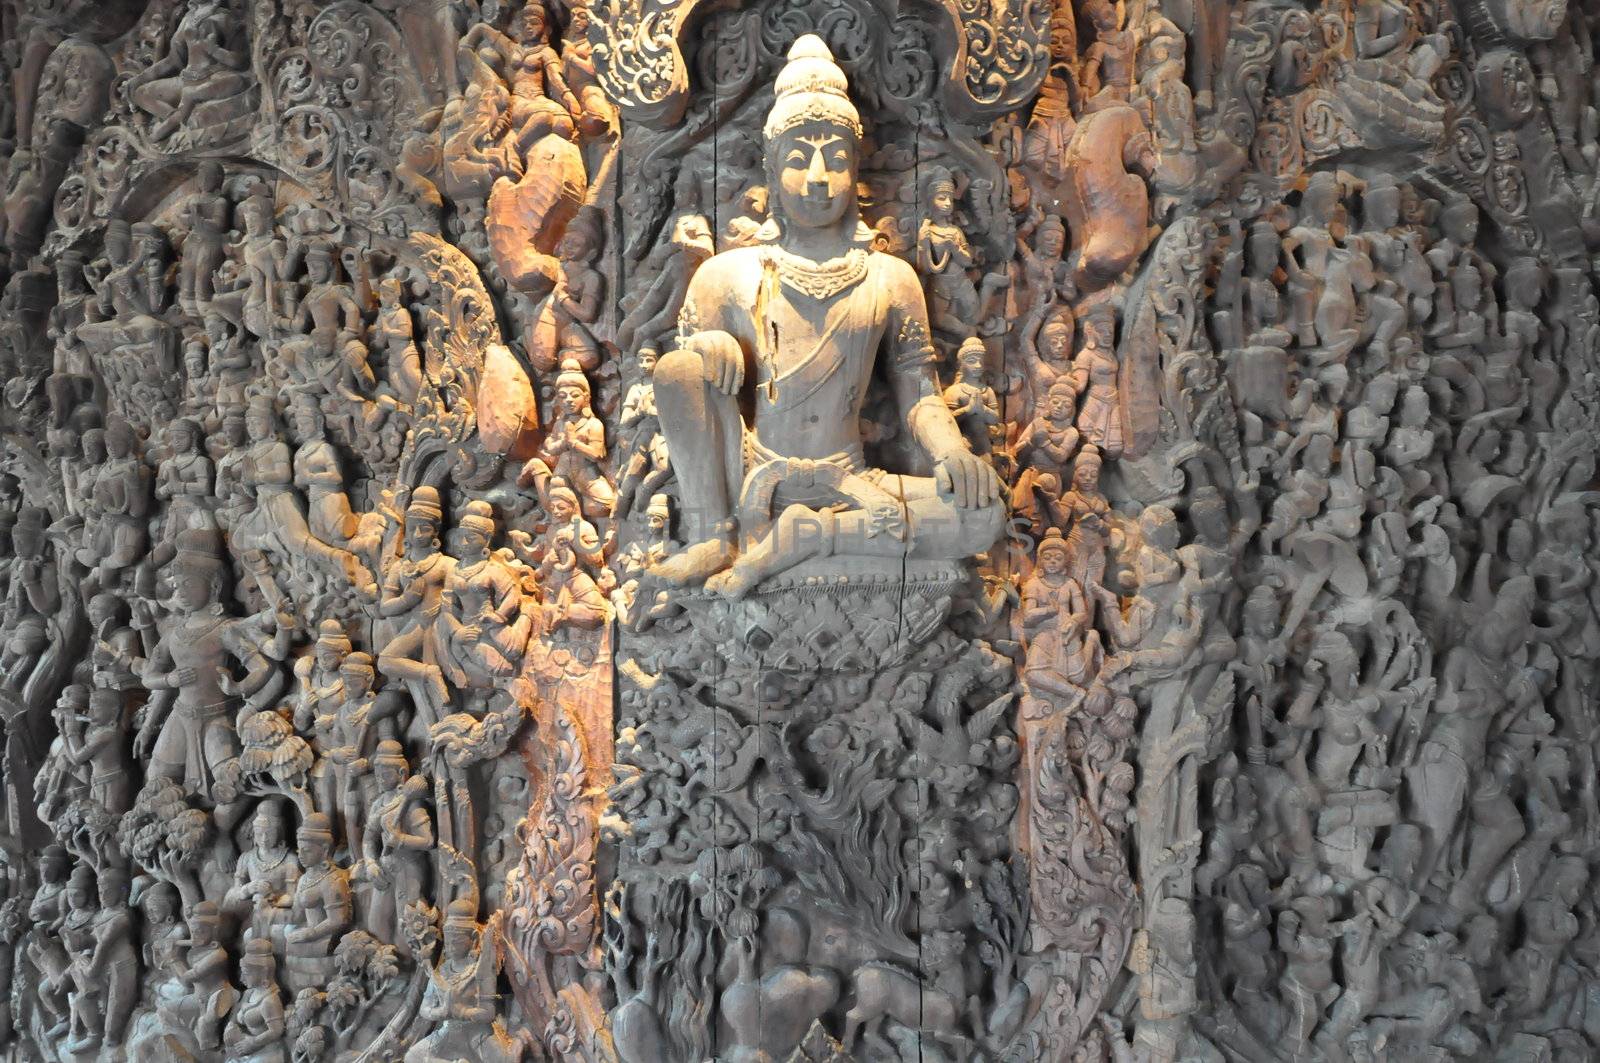 Sanctuary of Truth in Pattaya, Thailand by sainaniritu